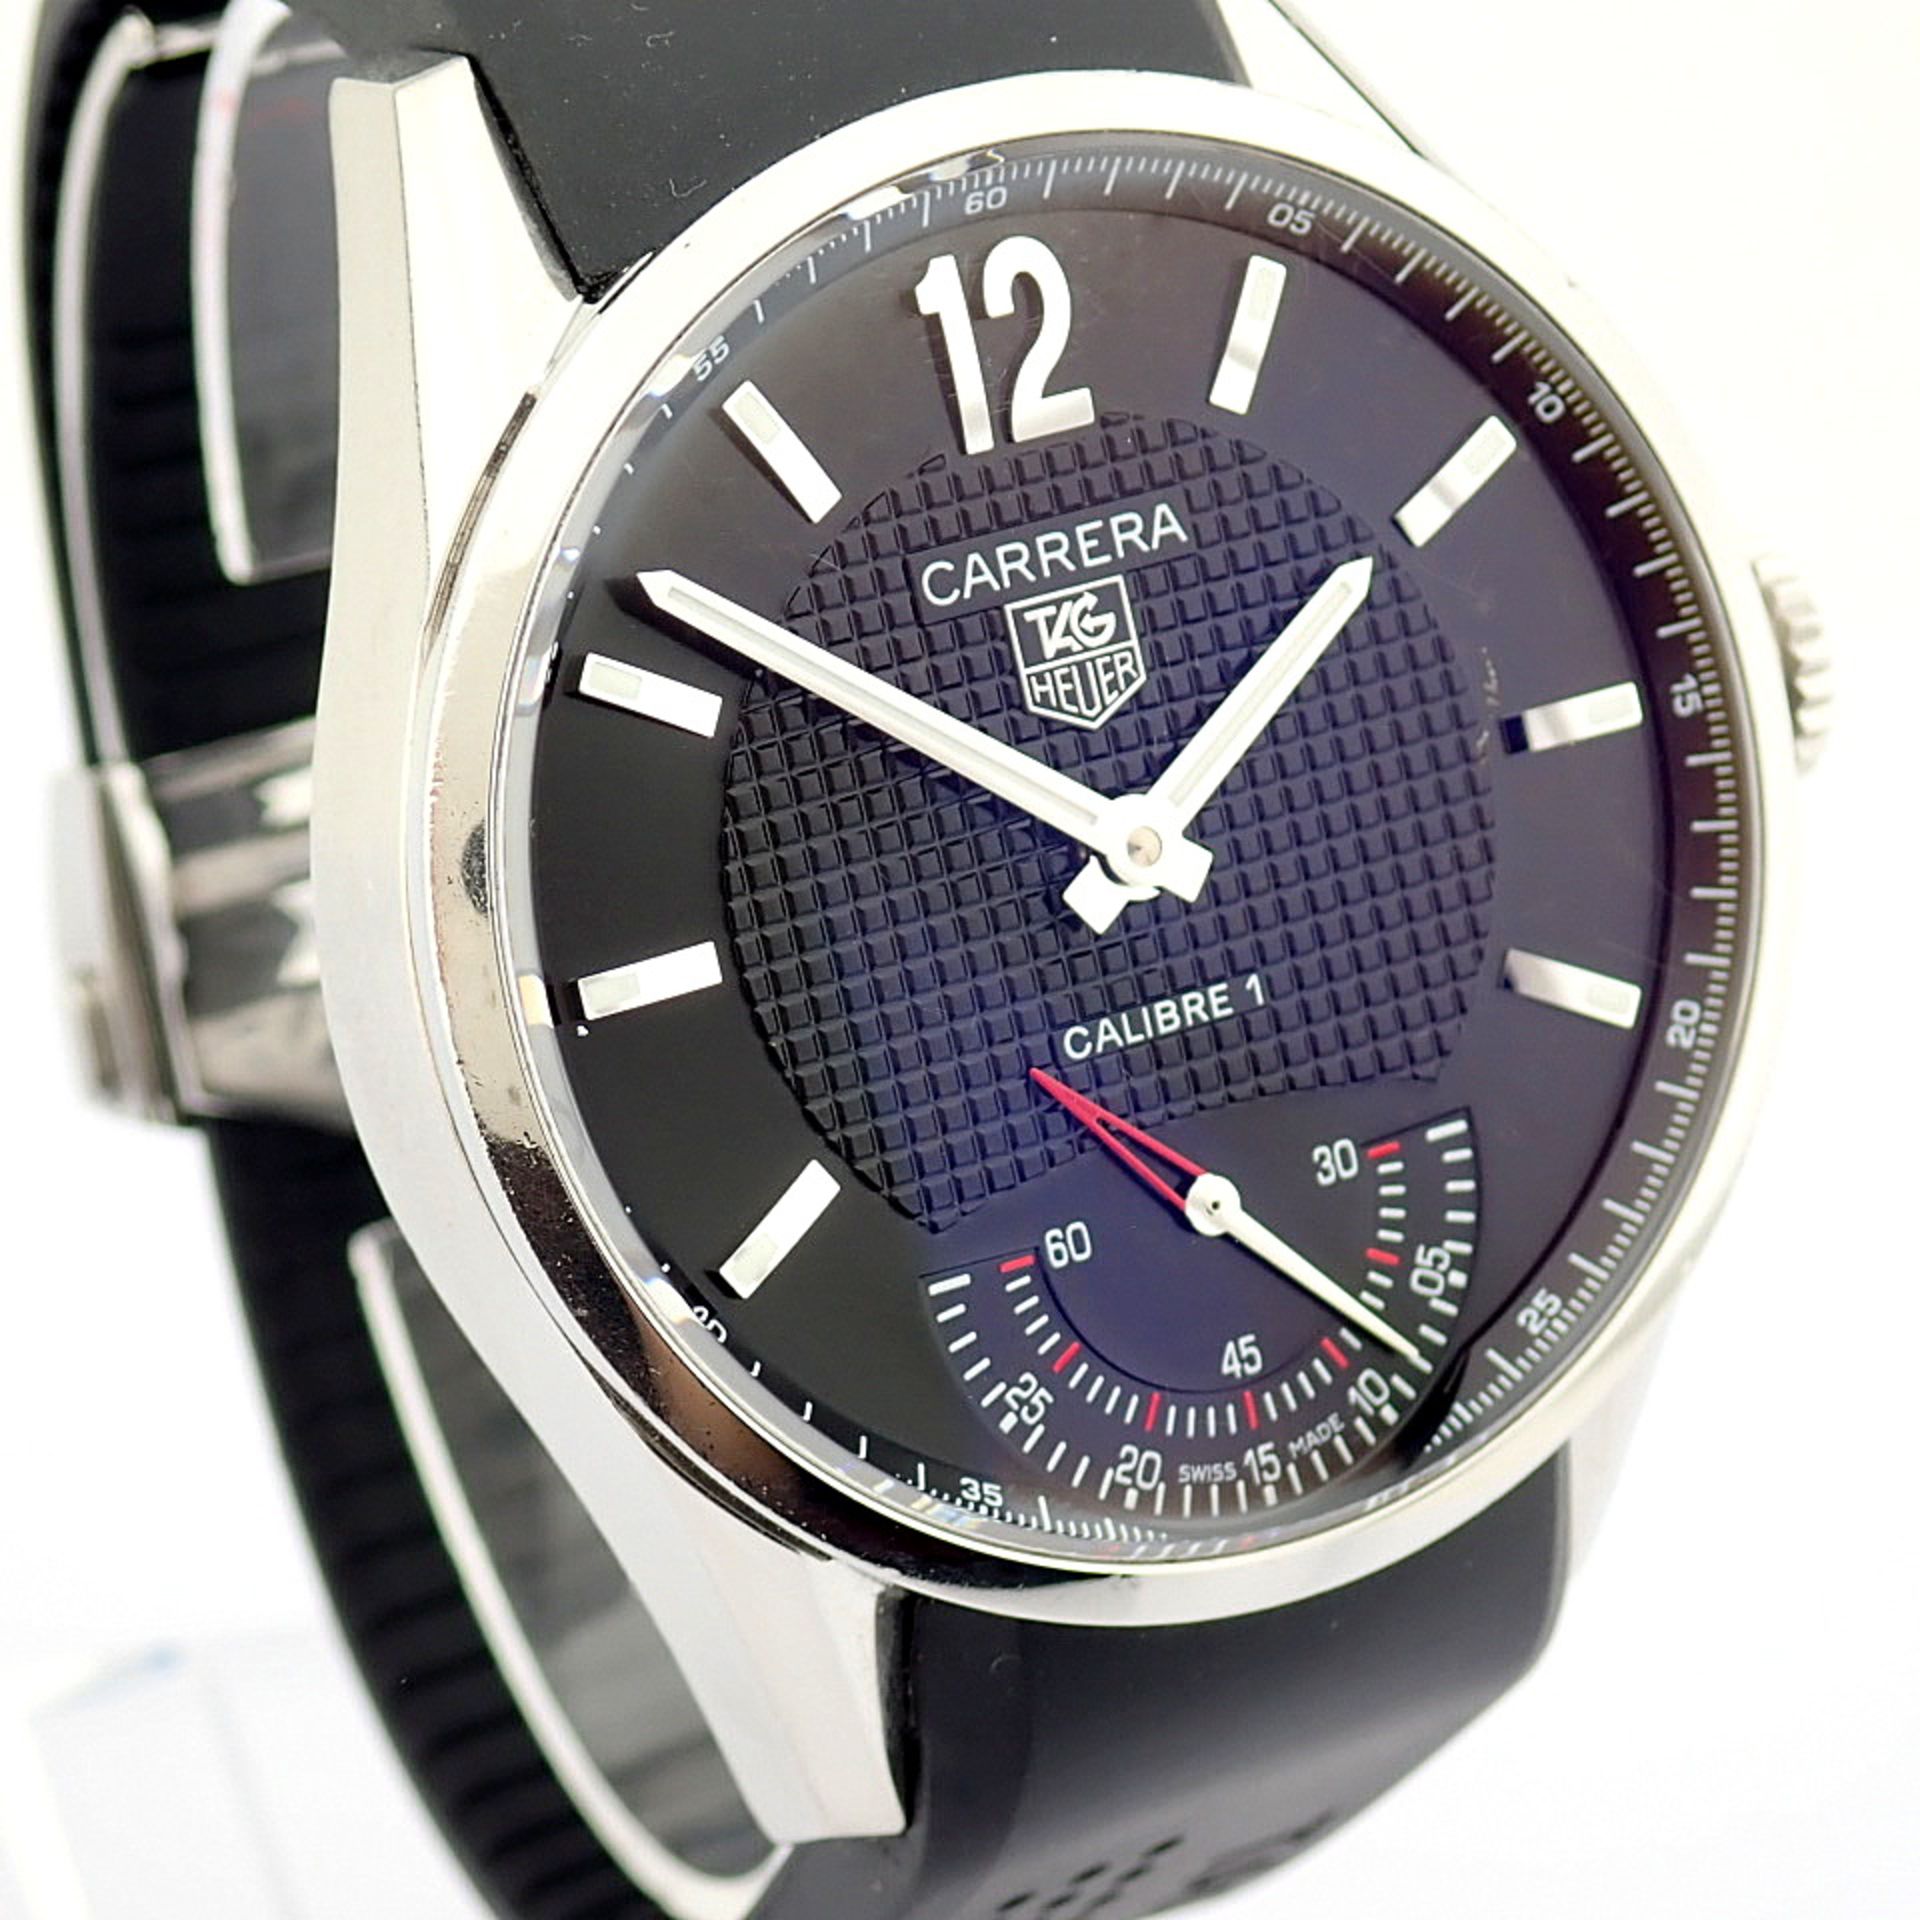 TAG Heuer / Carrera WV3010 Calibre 1 - Gentlmen's Steel Wrist Watch - Image 5 of 11